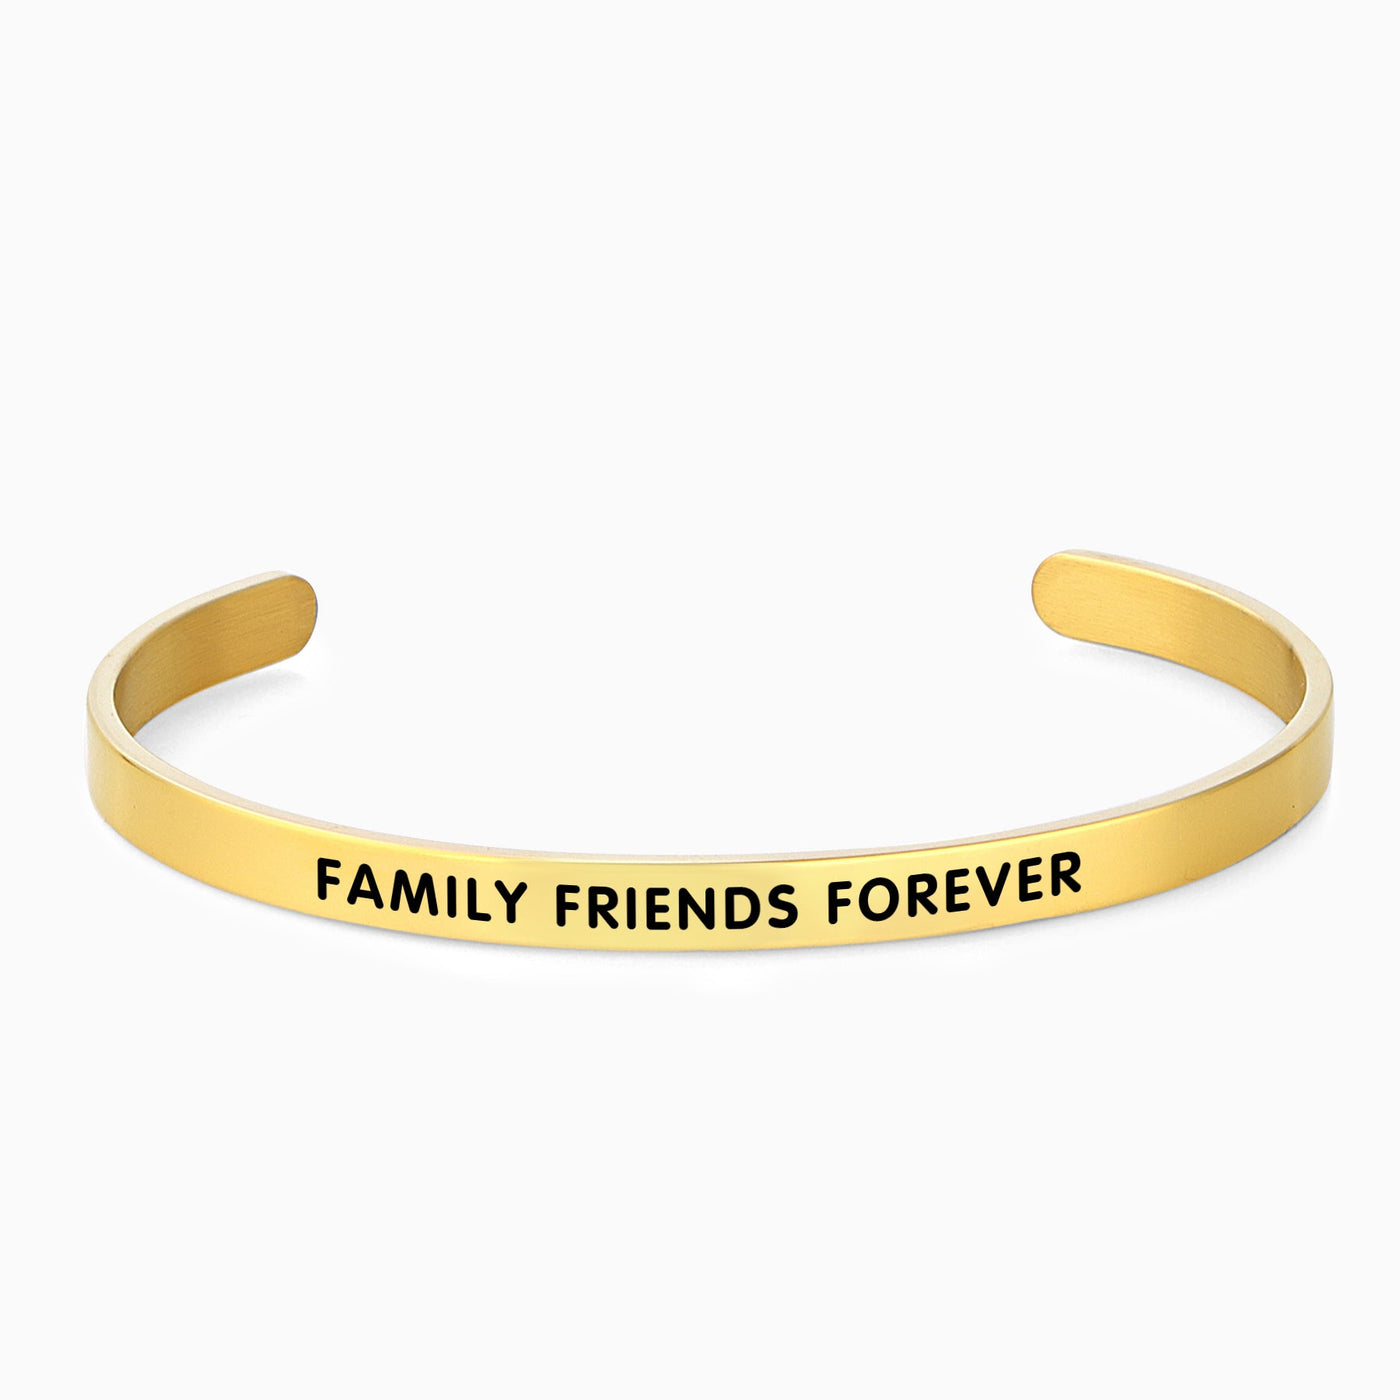 FAMILY FRIENDS FOREVER - OTANTO